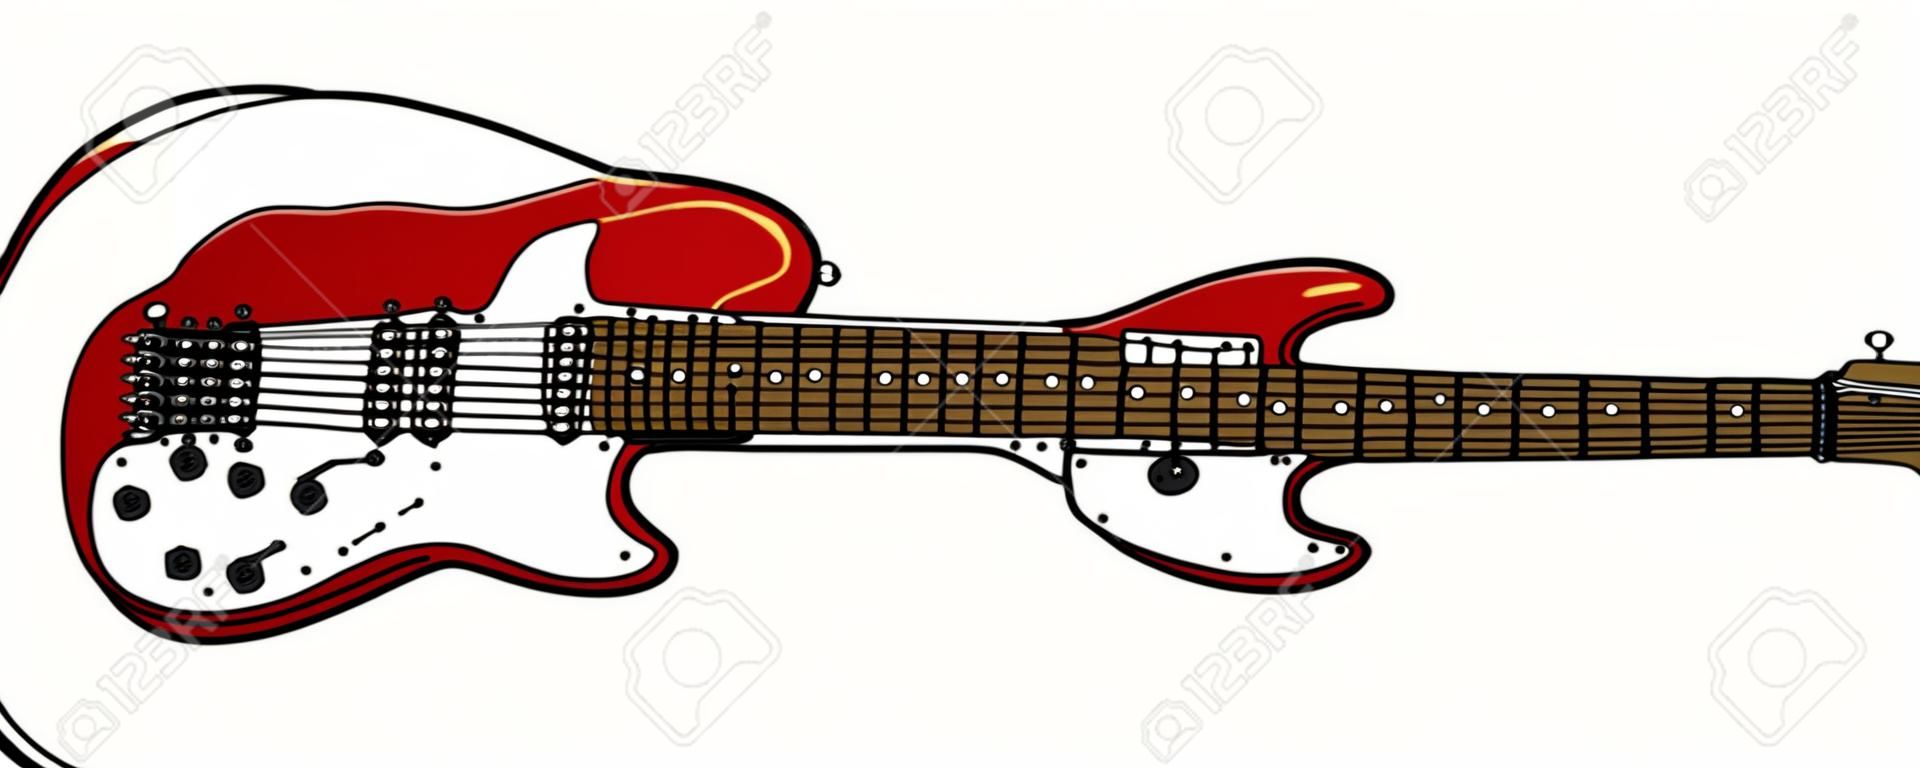 Wektoryzowany rysunek klasycznej czerwonej gitary elektrycznej